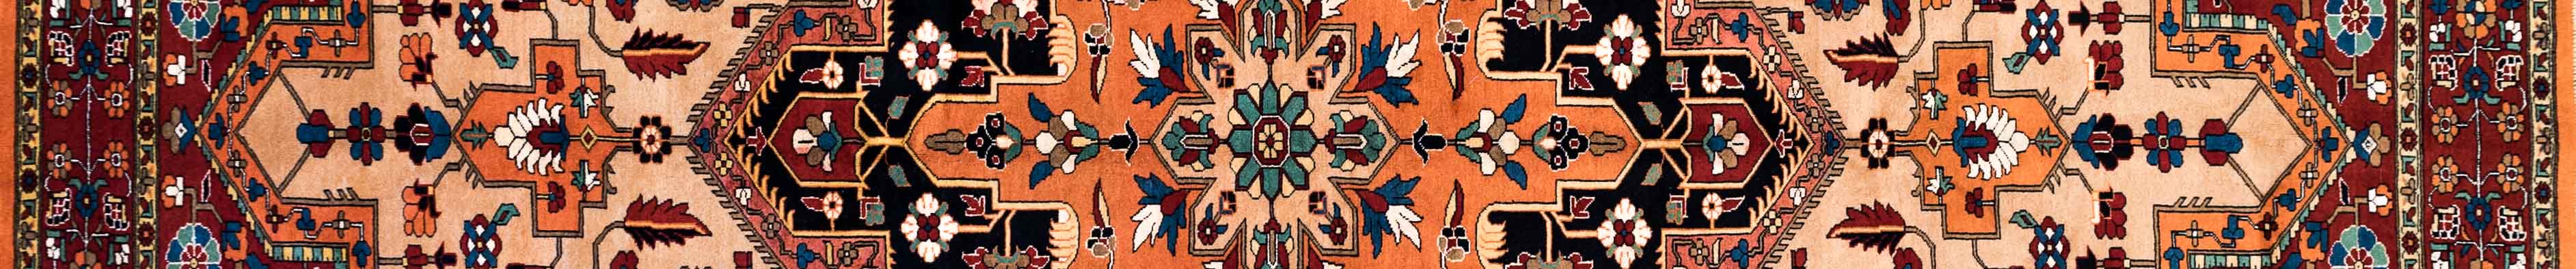 Heris Persian Carpet Rug N1Carpet Canada Montreal Tapis Persan 4800